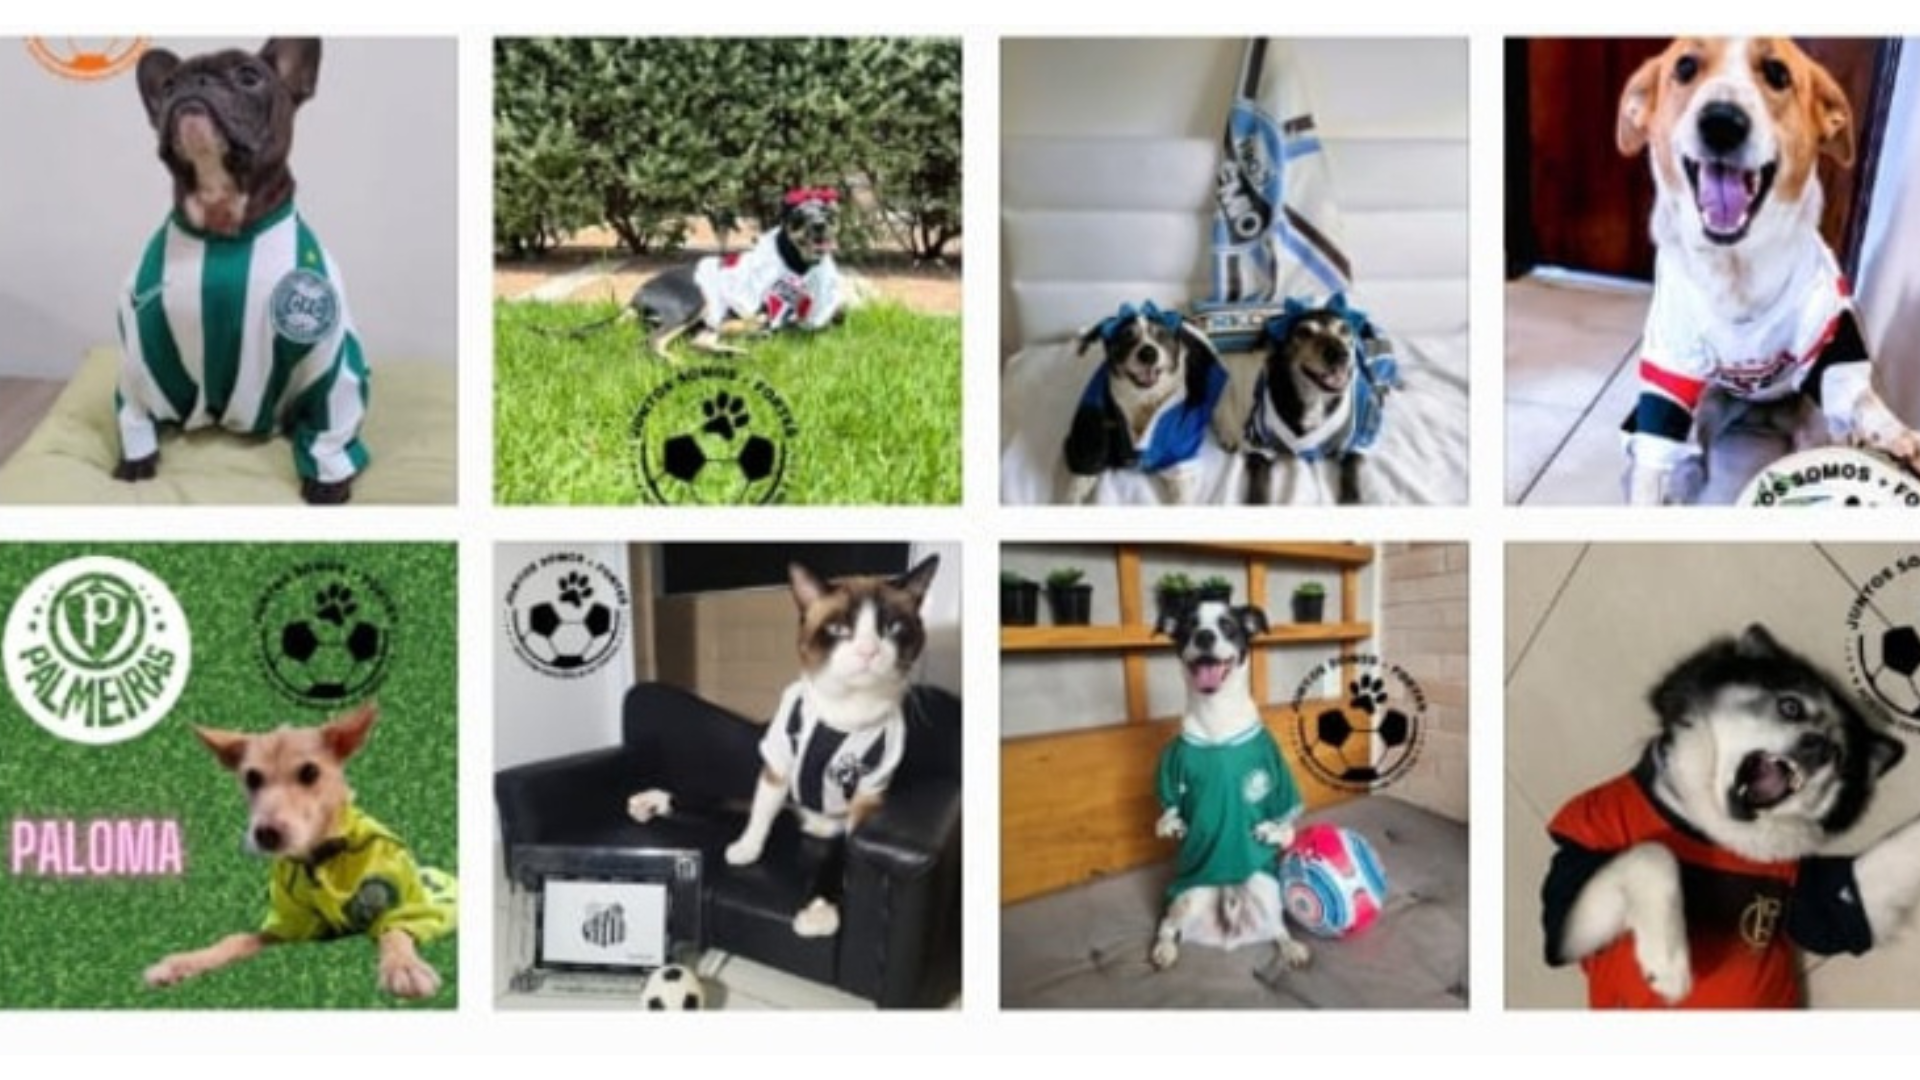 Campanha promove a visibilidade e inclusão de pets com deficiência junto ao futebol